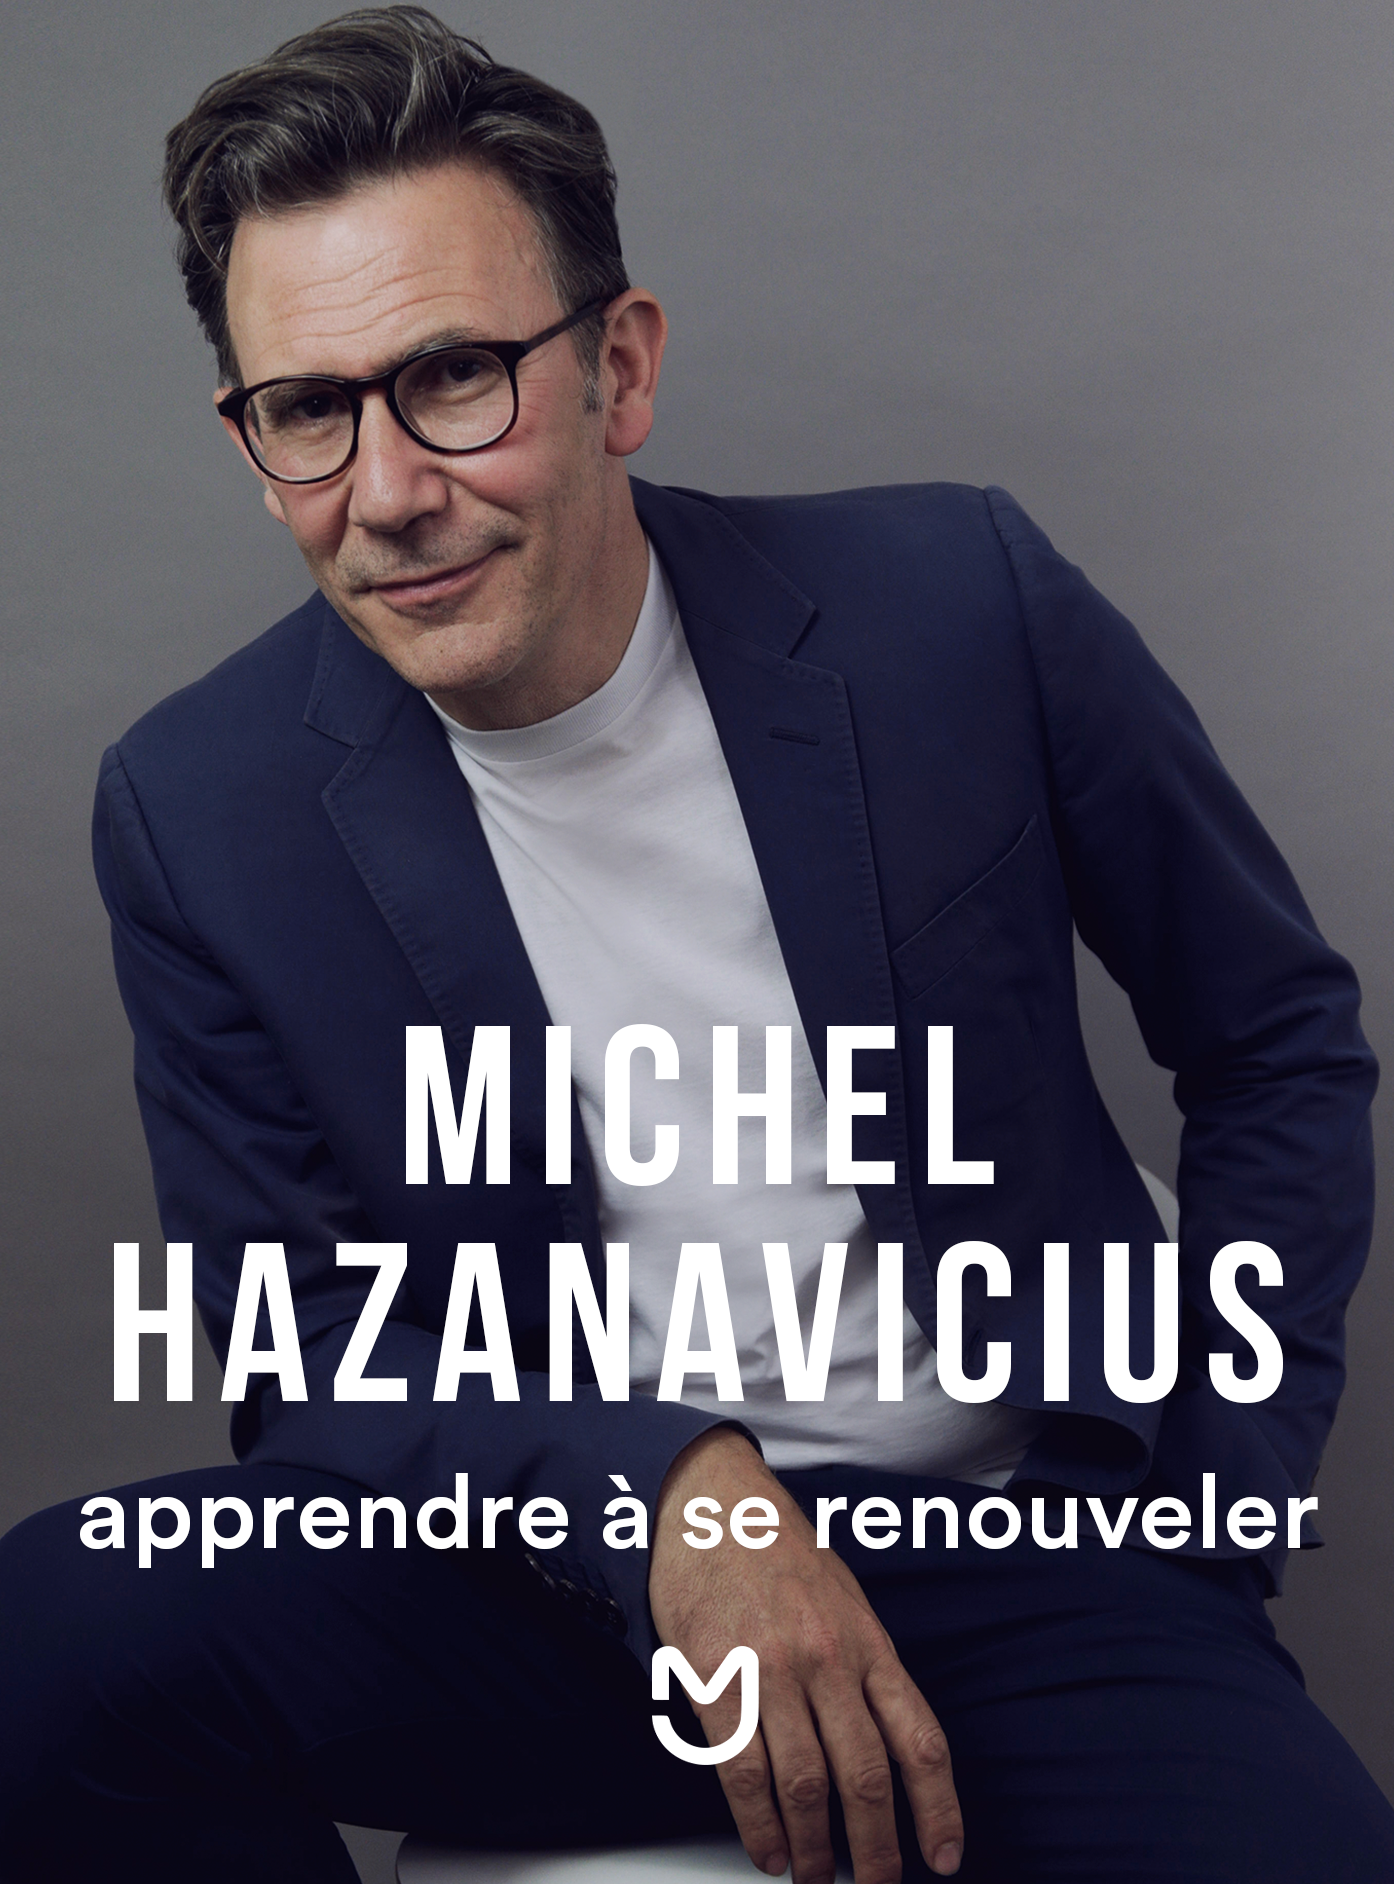 Michel Hazanavicius, apprendre à se renouveler